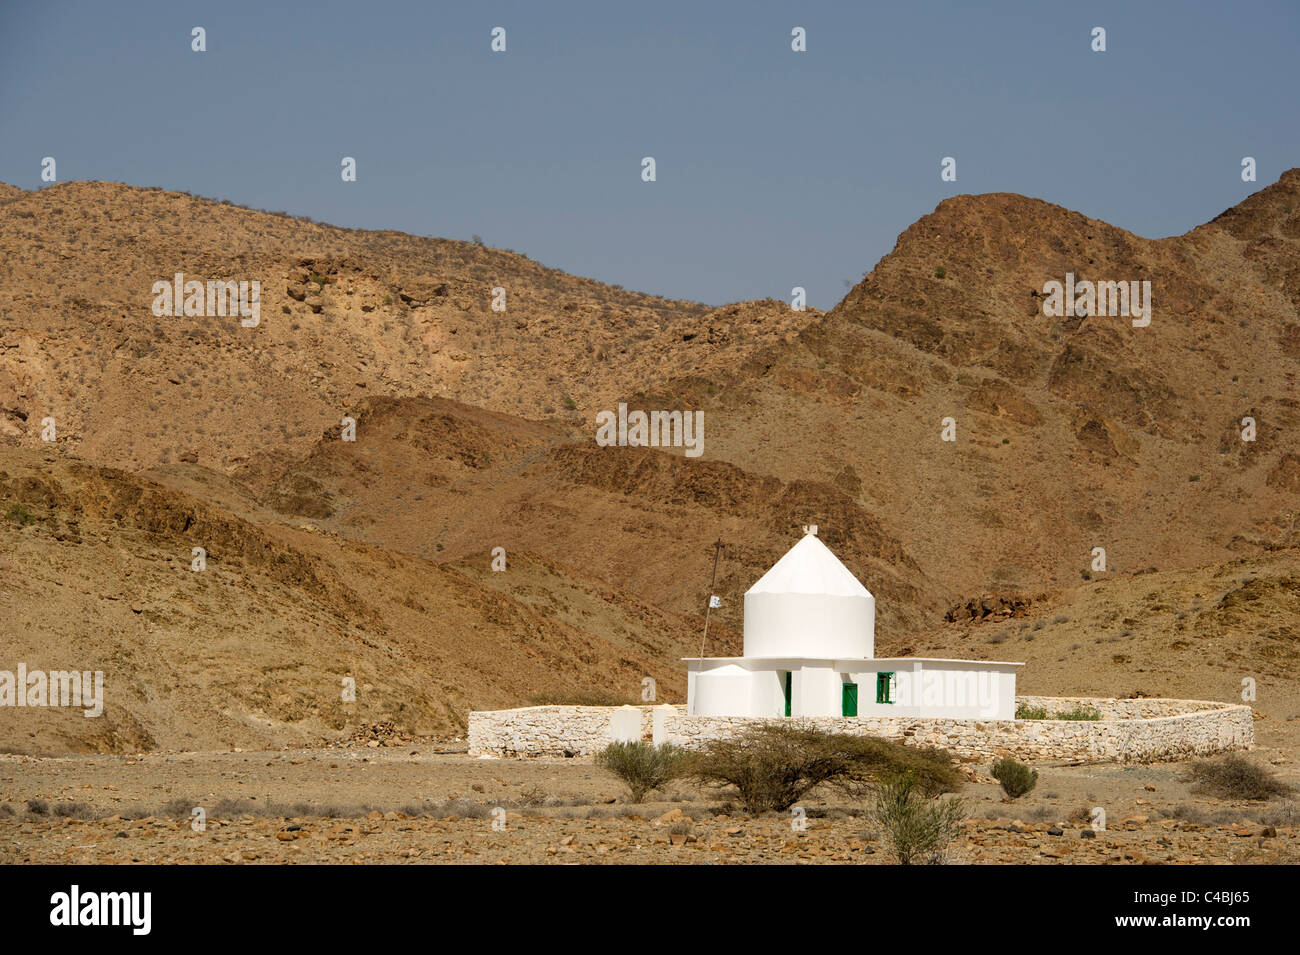 sheikh-issa-shrine-maydh-somaliland-somalia-C4BJ65.jpg